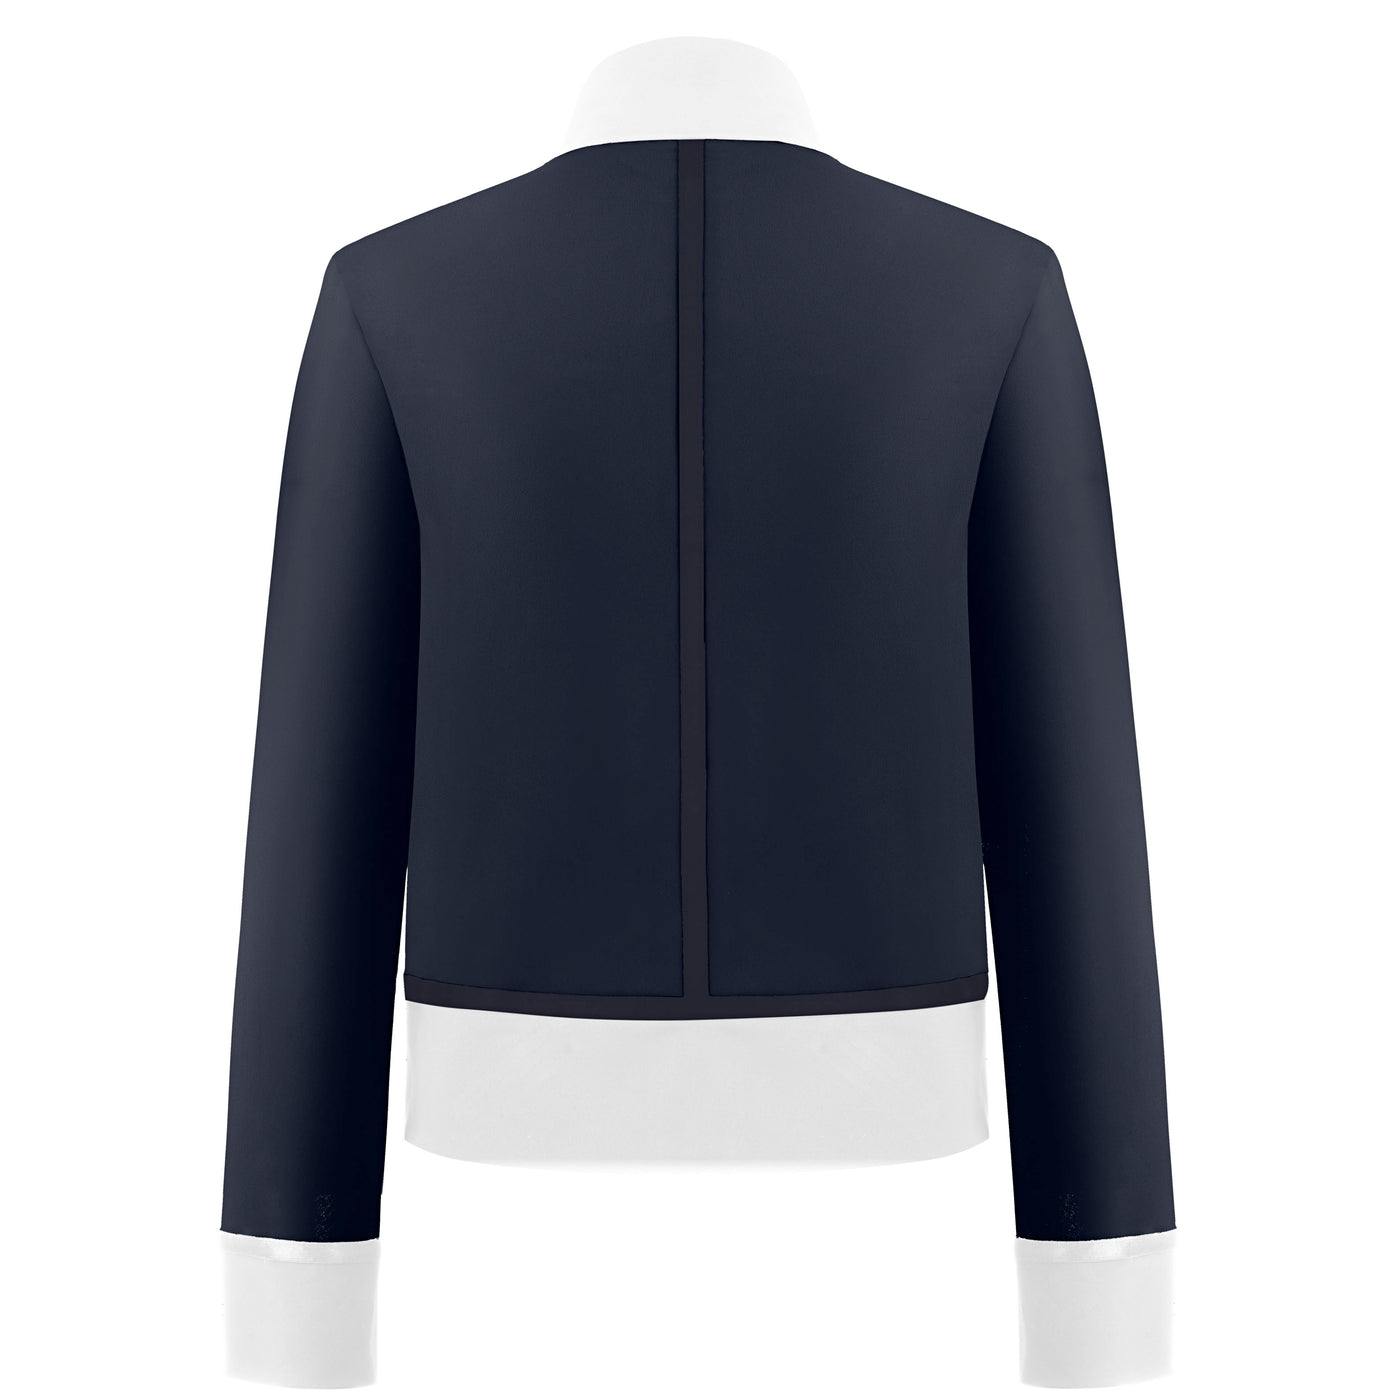 Ladies Jacket (Oxford Blue/White)